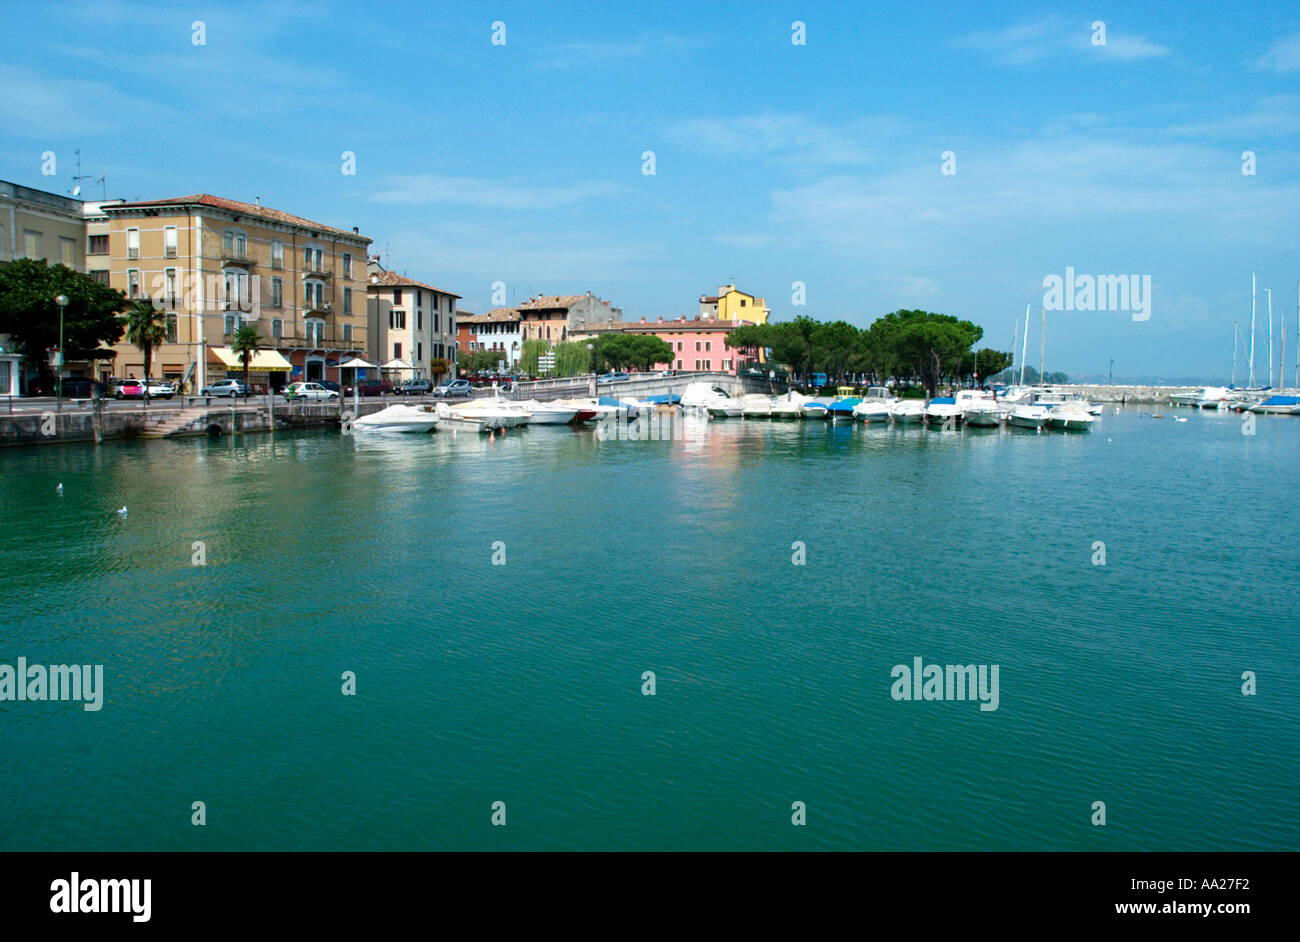 Il lago e il porto, Desenzano sul Lago di Garda, Italia Foto Stock